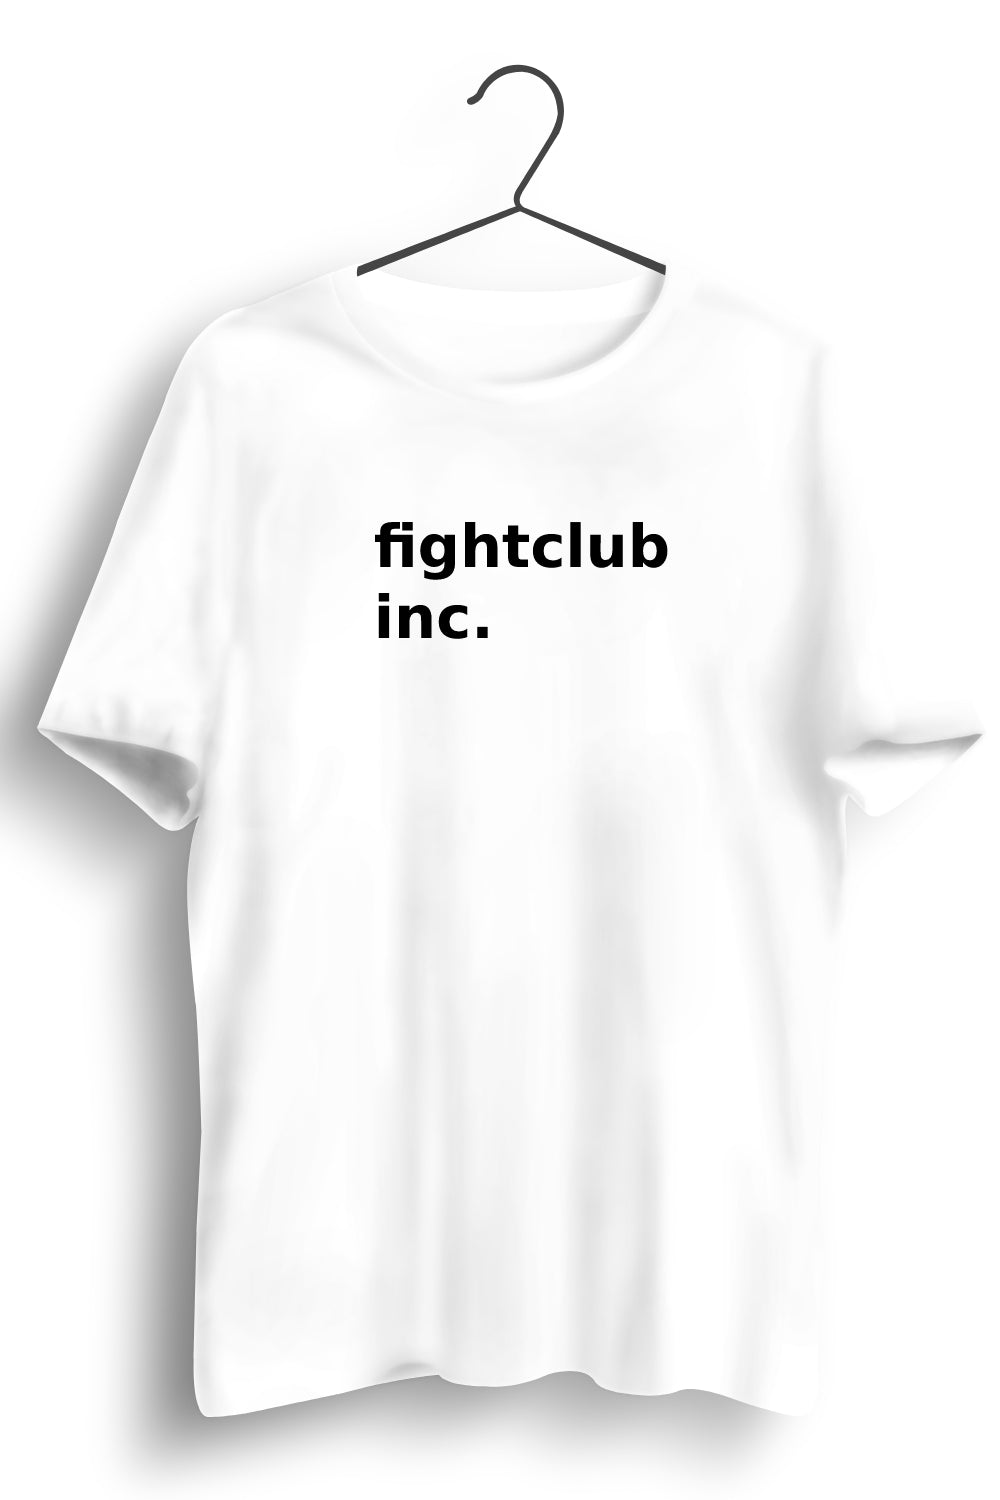 Fightclub Inc Printed White Tshirt